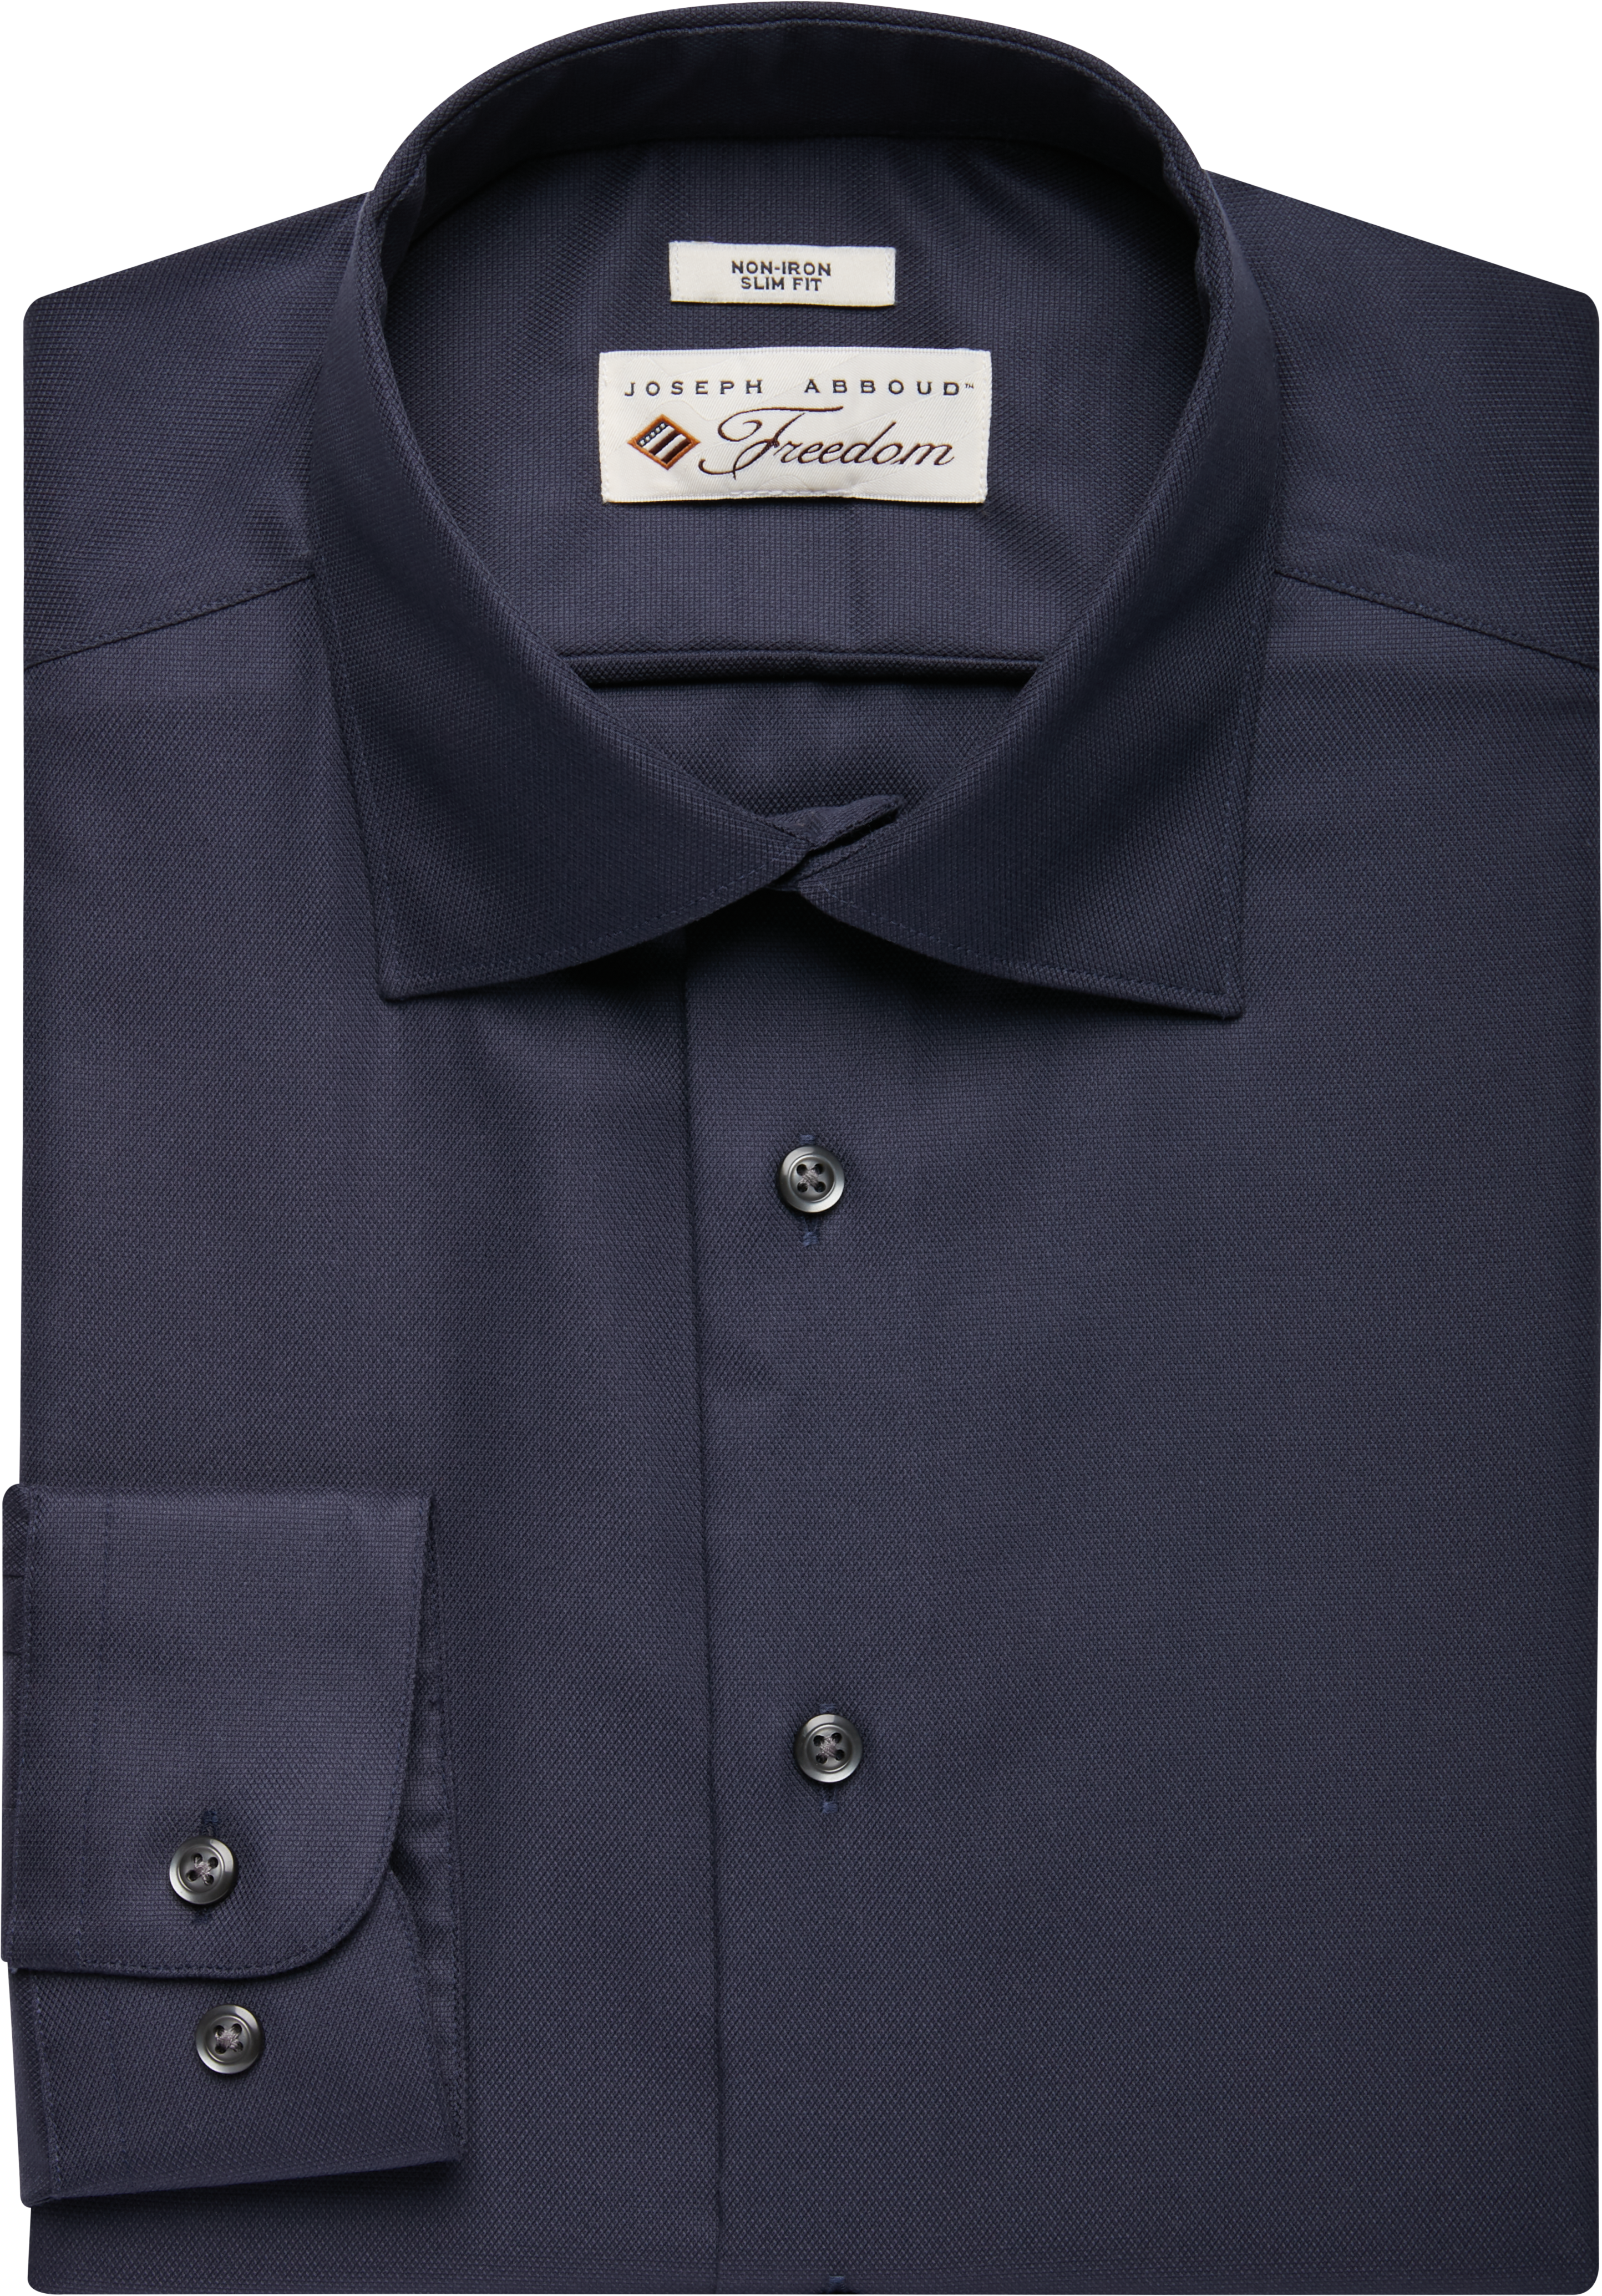 Joseph Abboud Freedom Blue Graphite Slim Fit Dress Shirt - Men's Sale ...